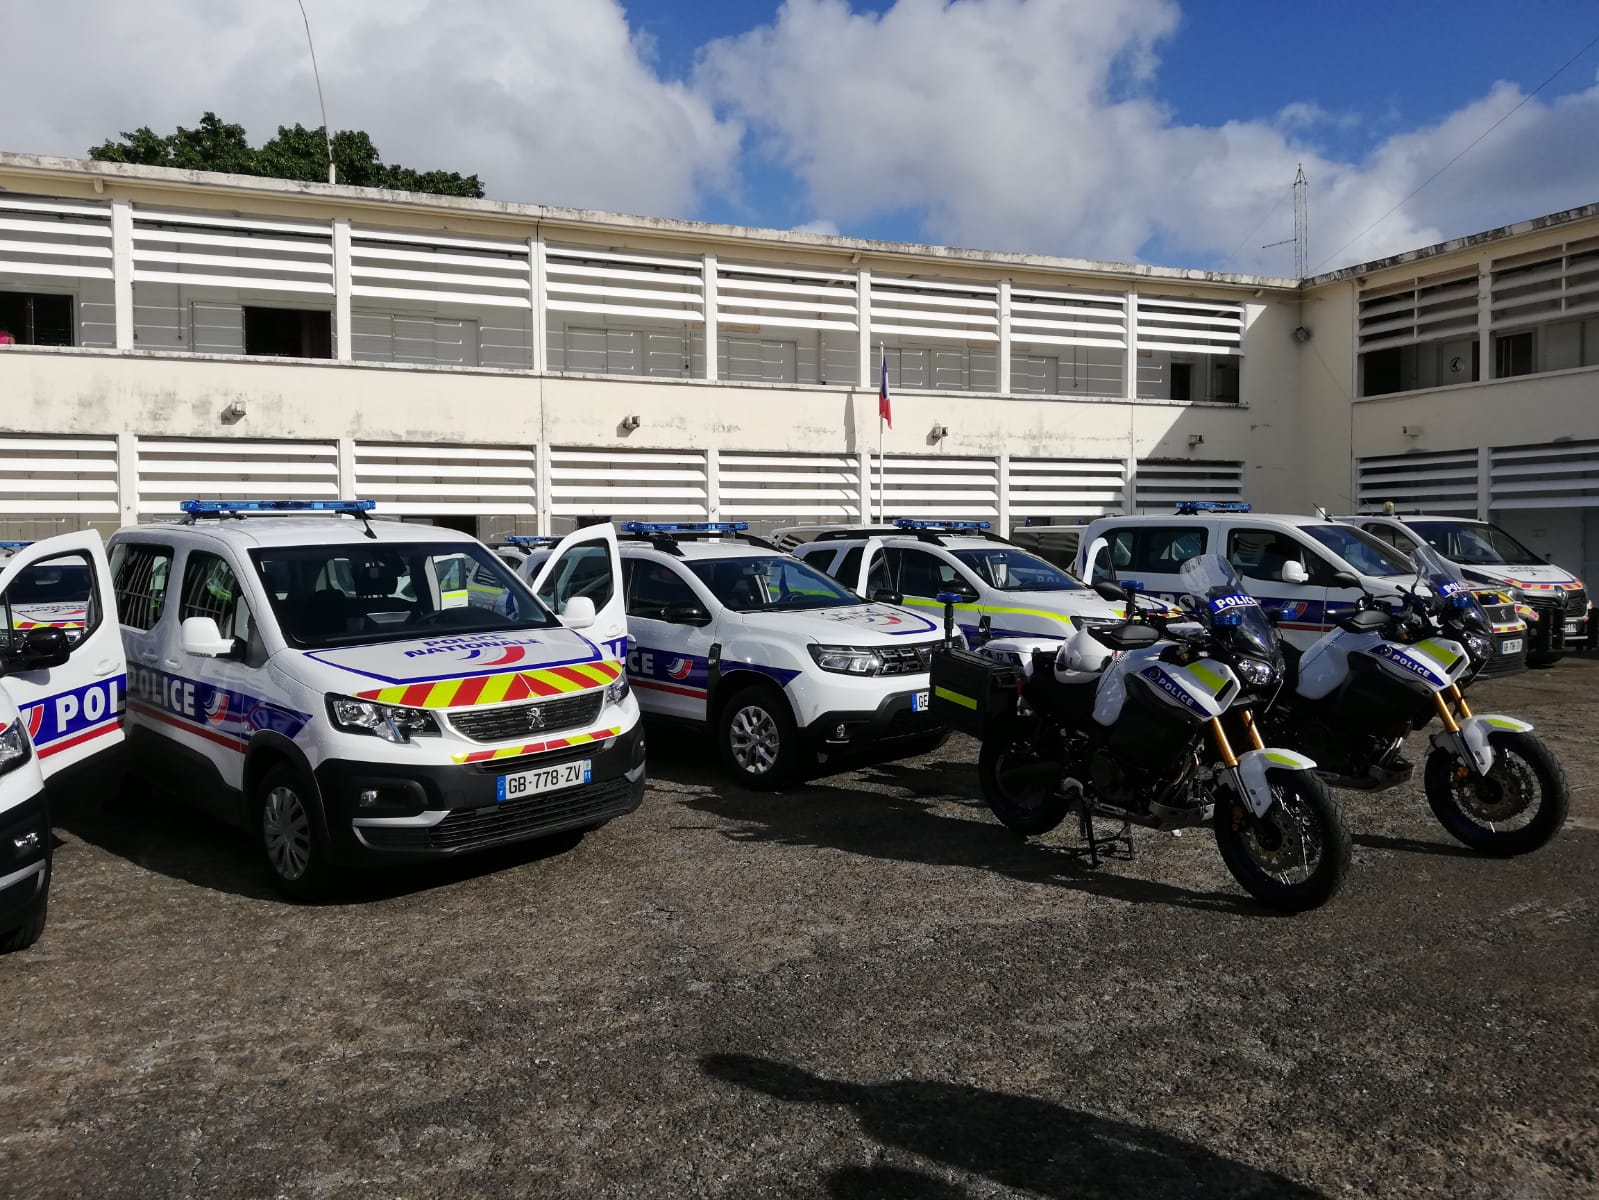     La Police Nationale dotée de nouveaux véhicules 

